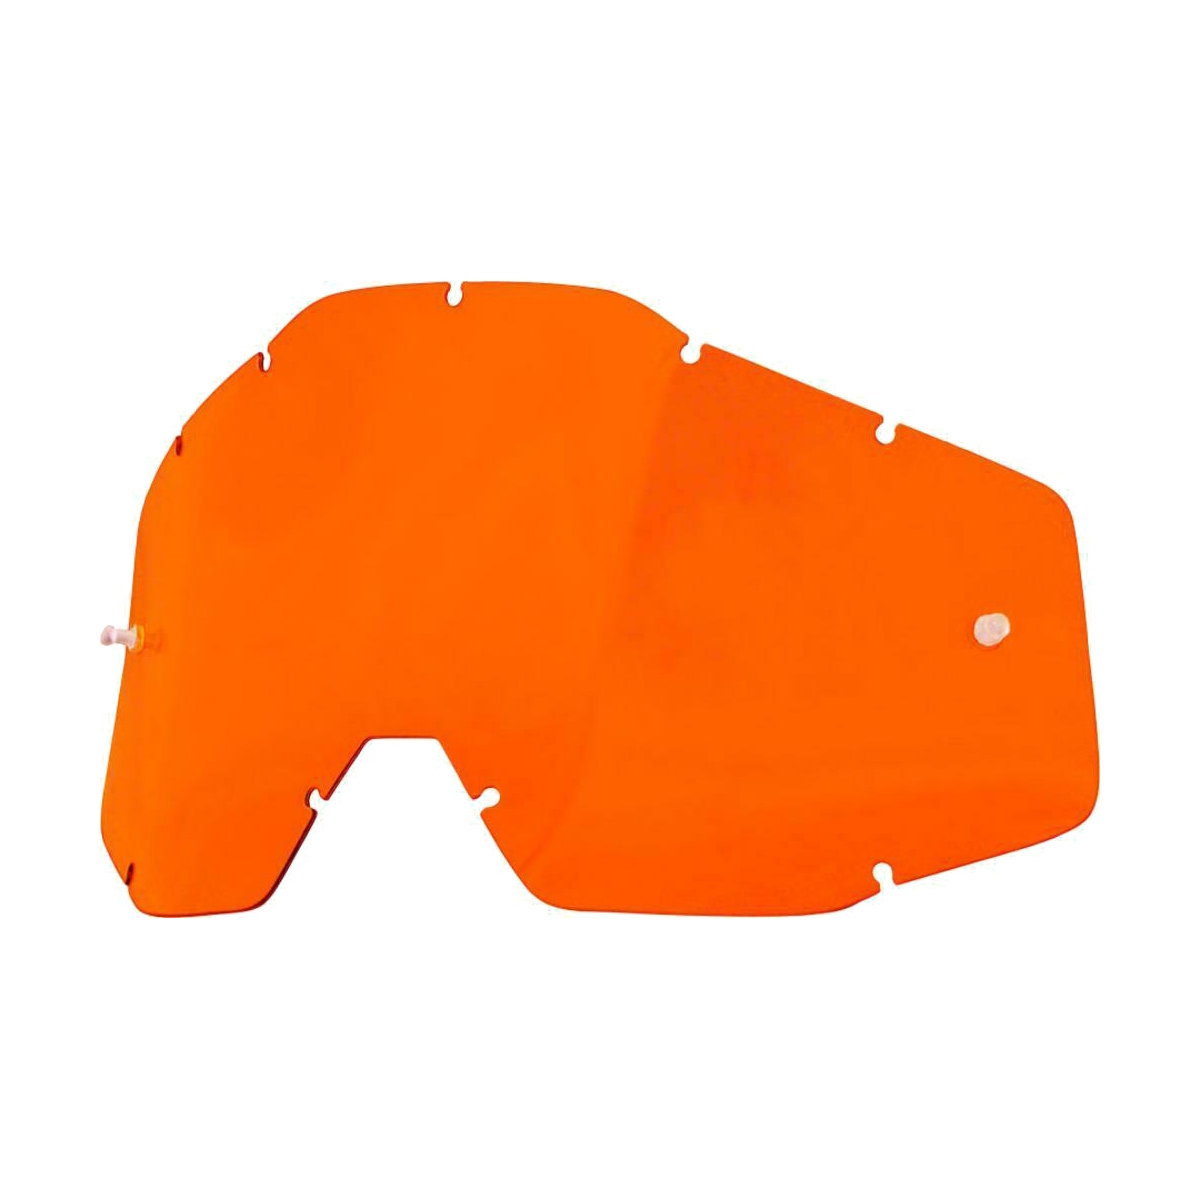 Linsenersatz orange für Racecraft, Accuri e Strata